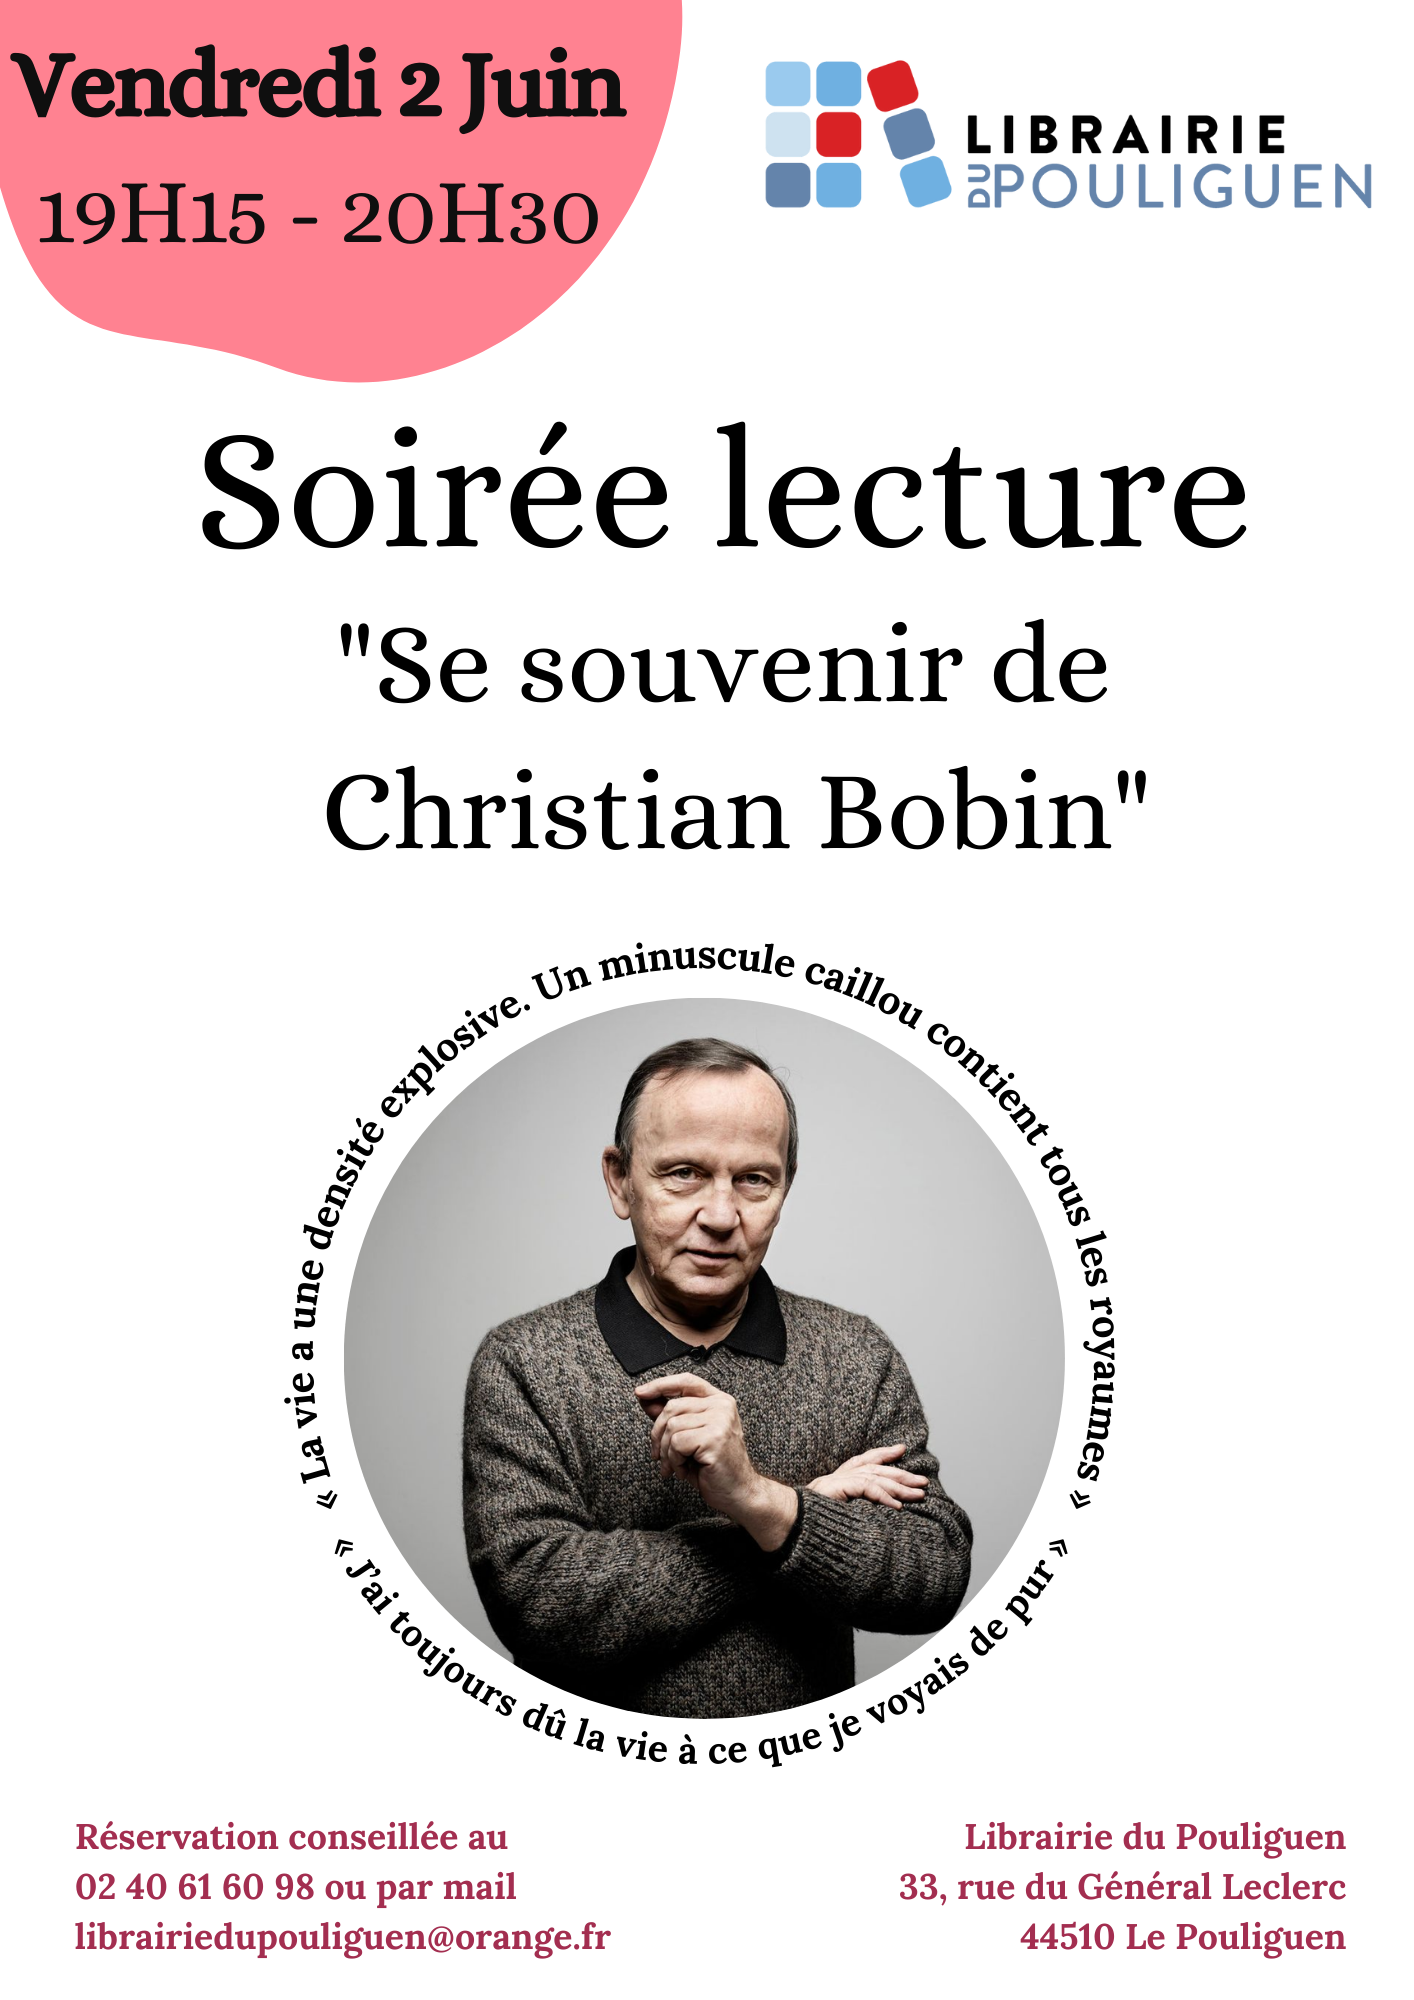 Soirée lecture Christian Bobin © Librairie du Pouliguen